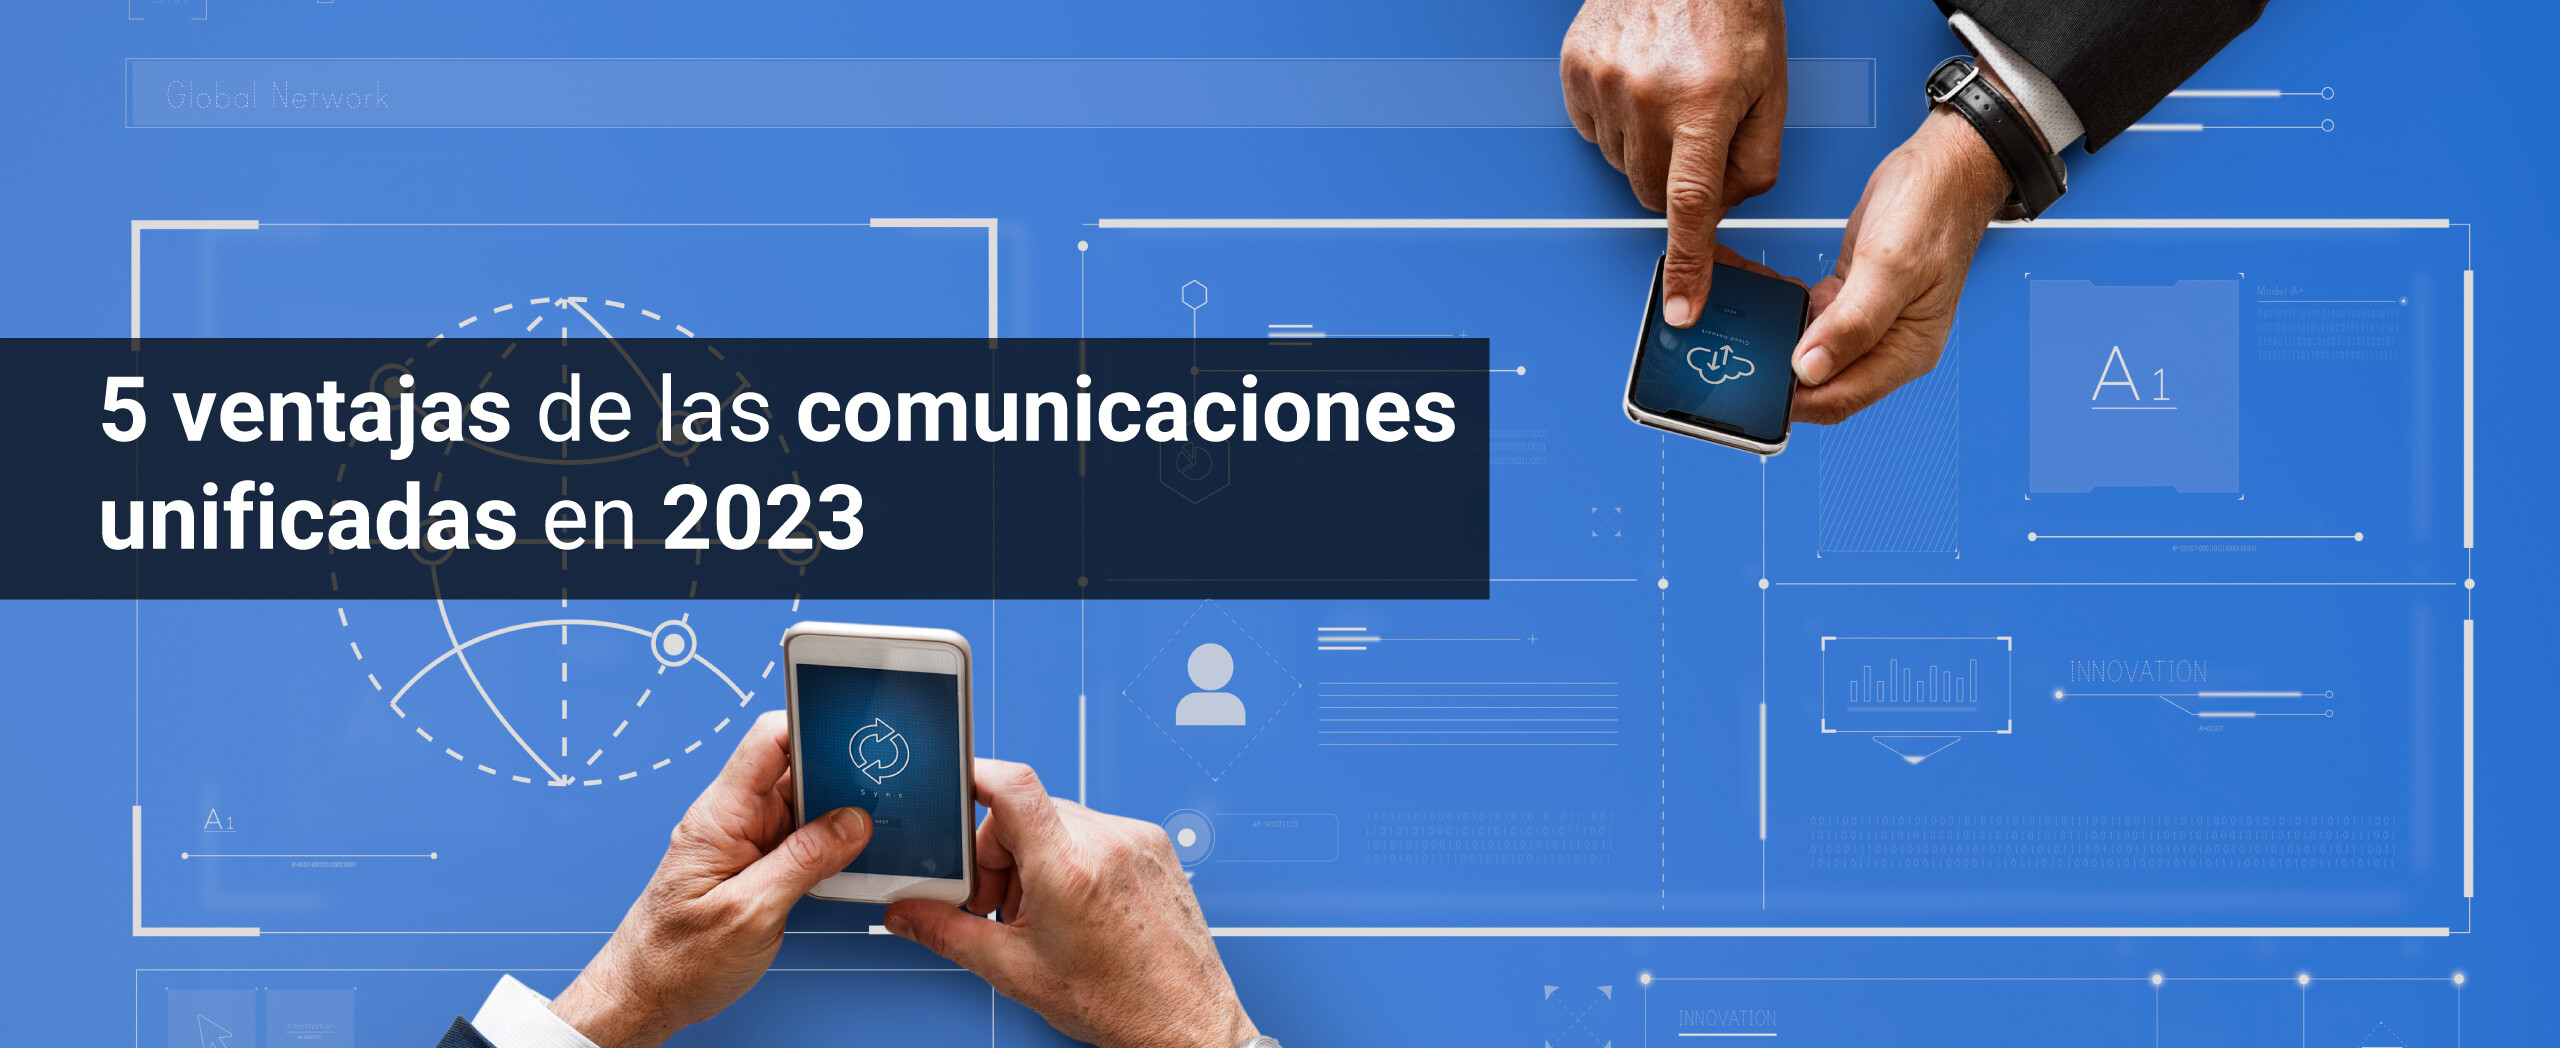 5 ventajas de las comunicaciones unificadas en 2023